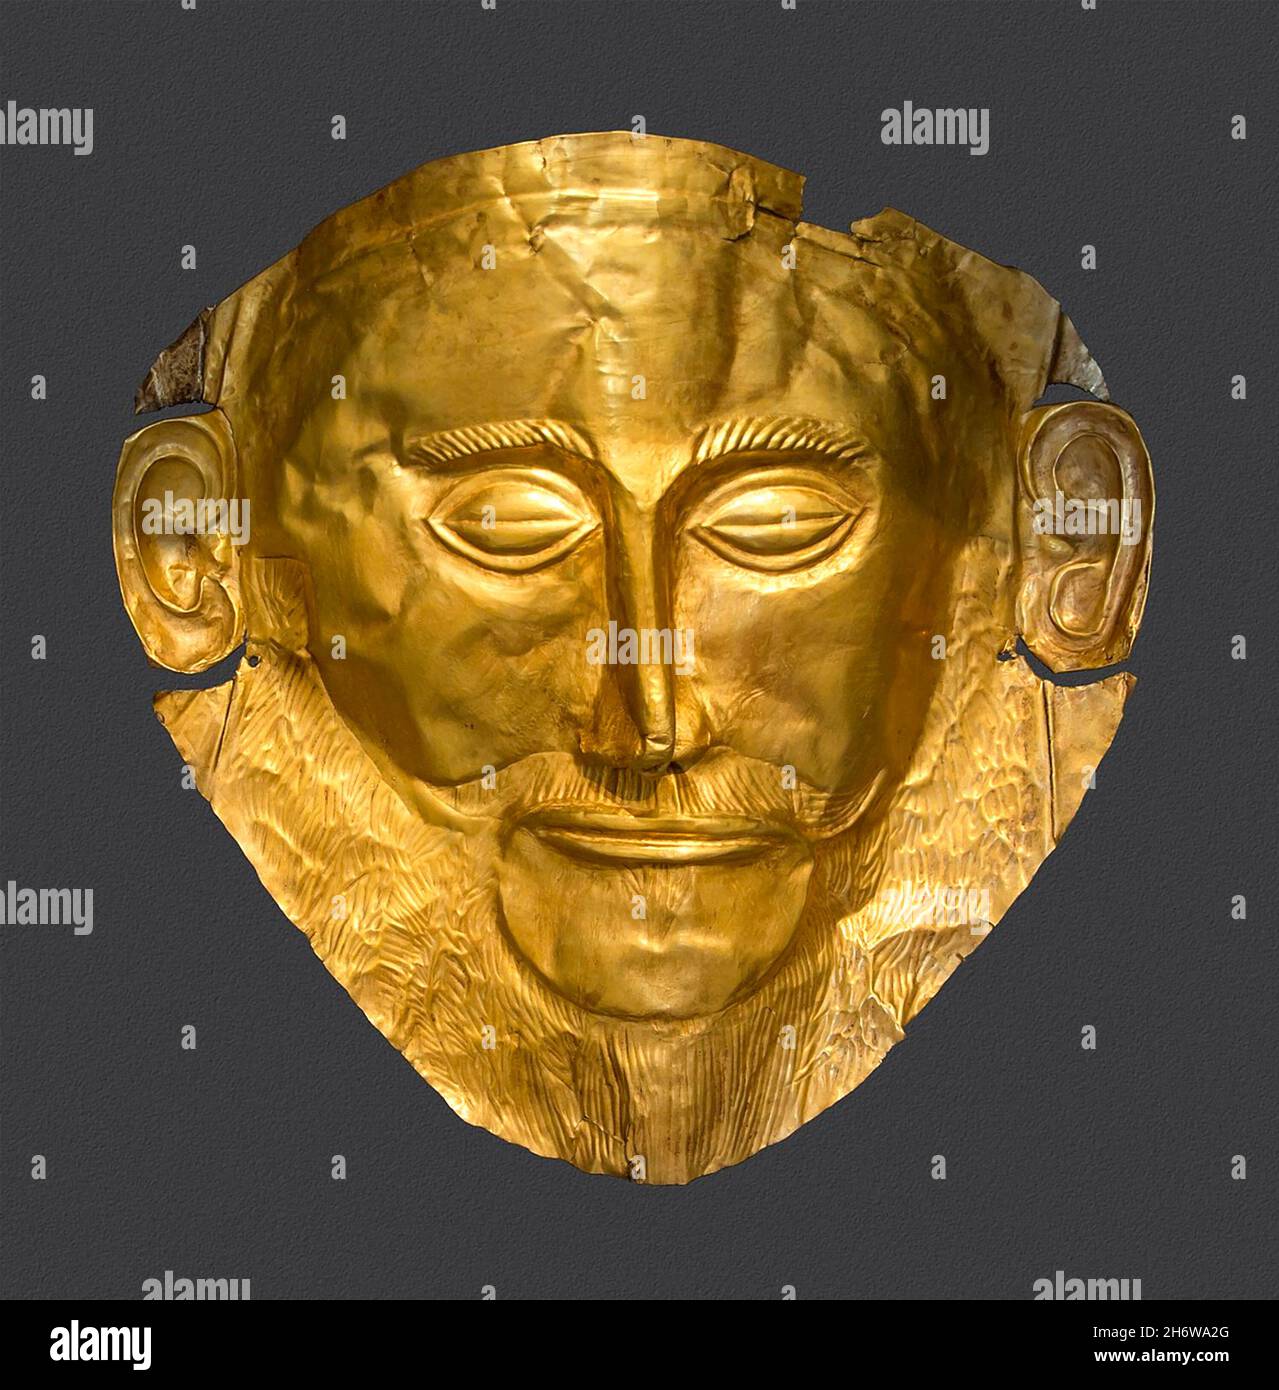 MASQUE D'AGAMEMNON masque funéraire d'or découvert à Mycenae par Heinrich Schliemann en 1876. Banque D'Images